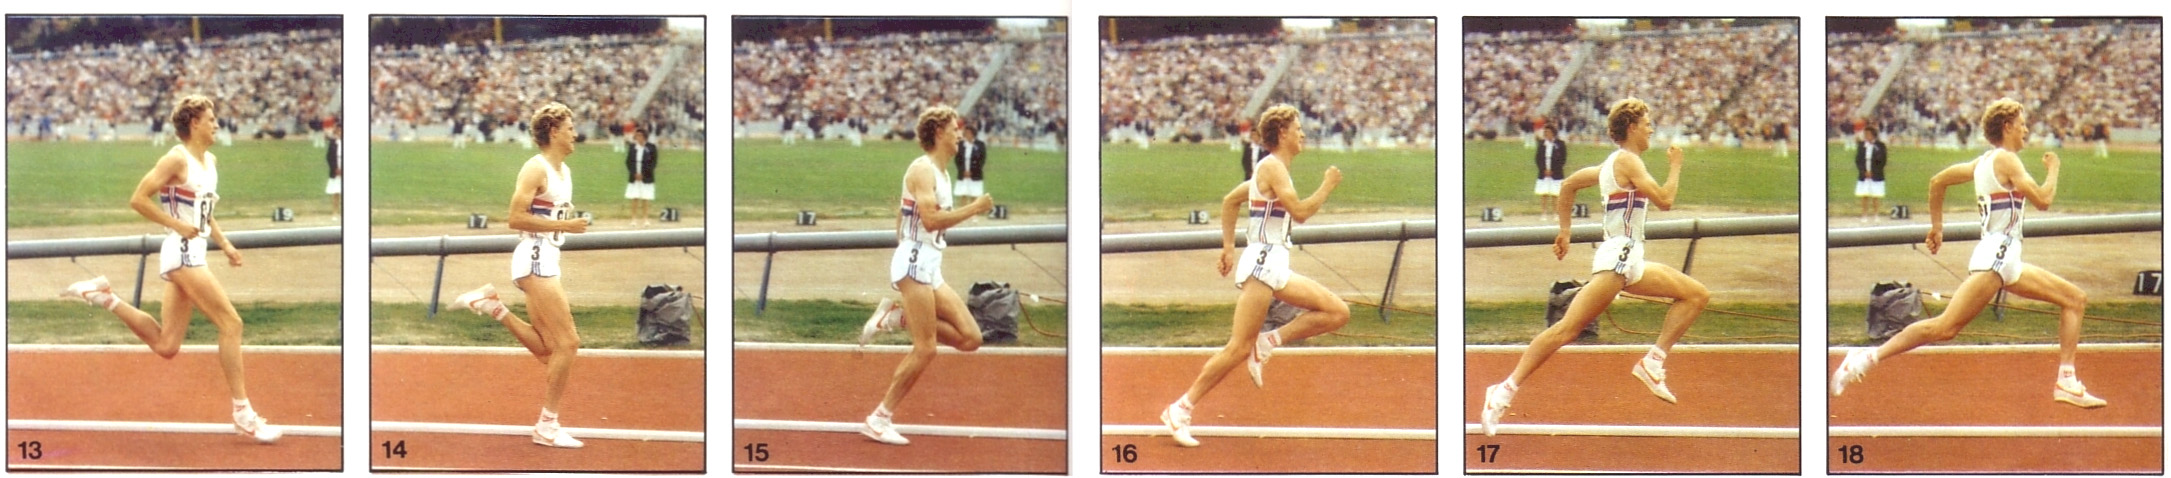 中長跑的綜合學科訓練法 Deshon 與 Nelson 1964 也從他們的研究總結了 良好跑步效能之其中一個特點 就是運動員腳著 地的位置 應該盡量接近身體重心在地上的投影 點 可以更迅速地向前擺出 當運動員的大腿達至水 平或接近水平時 小腿應自然地向前擺動 準備 著地 蹬地階段 圖 7-9 15-17 inrichs 1982 從他的研究總結出 手部 動作的主要功用是抵銷因腿部動作而產生